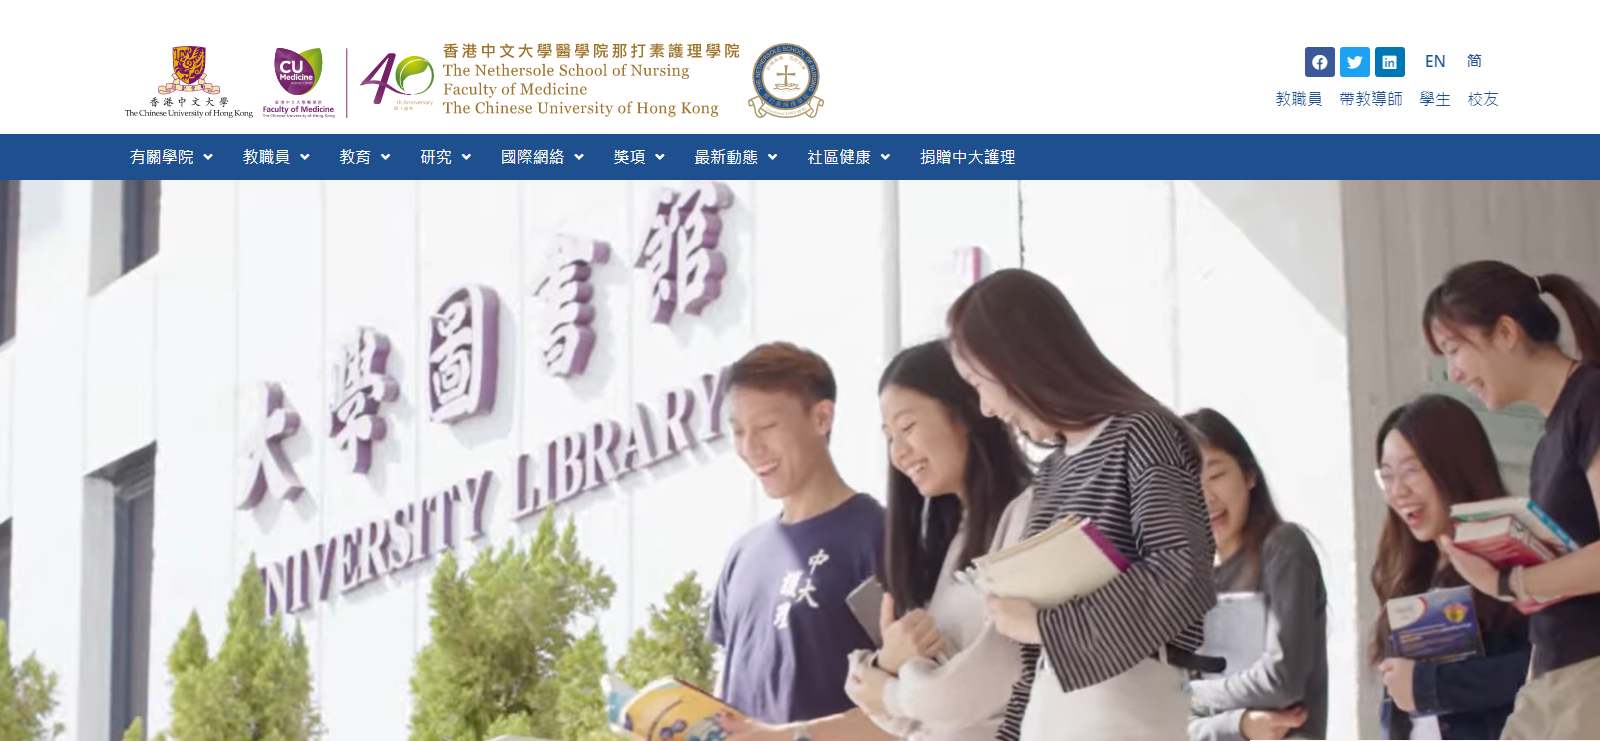 中文版网站正式上线